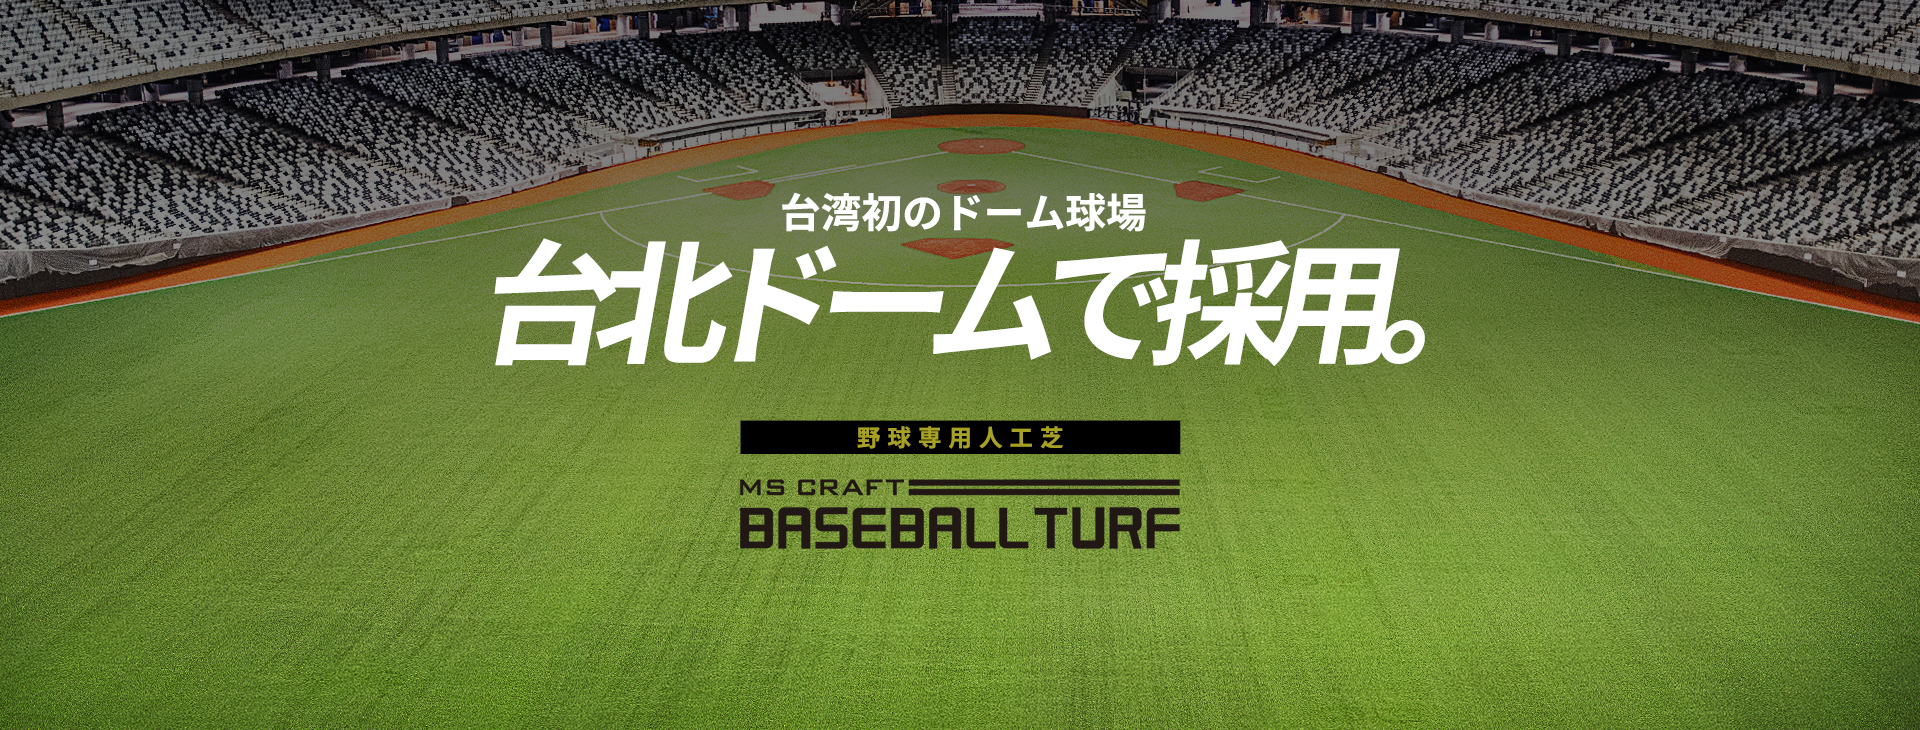 ミズノ製野球用人工芝BASEBALL TURF（ベースボールターフ）が台北ドームに採用